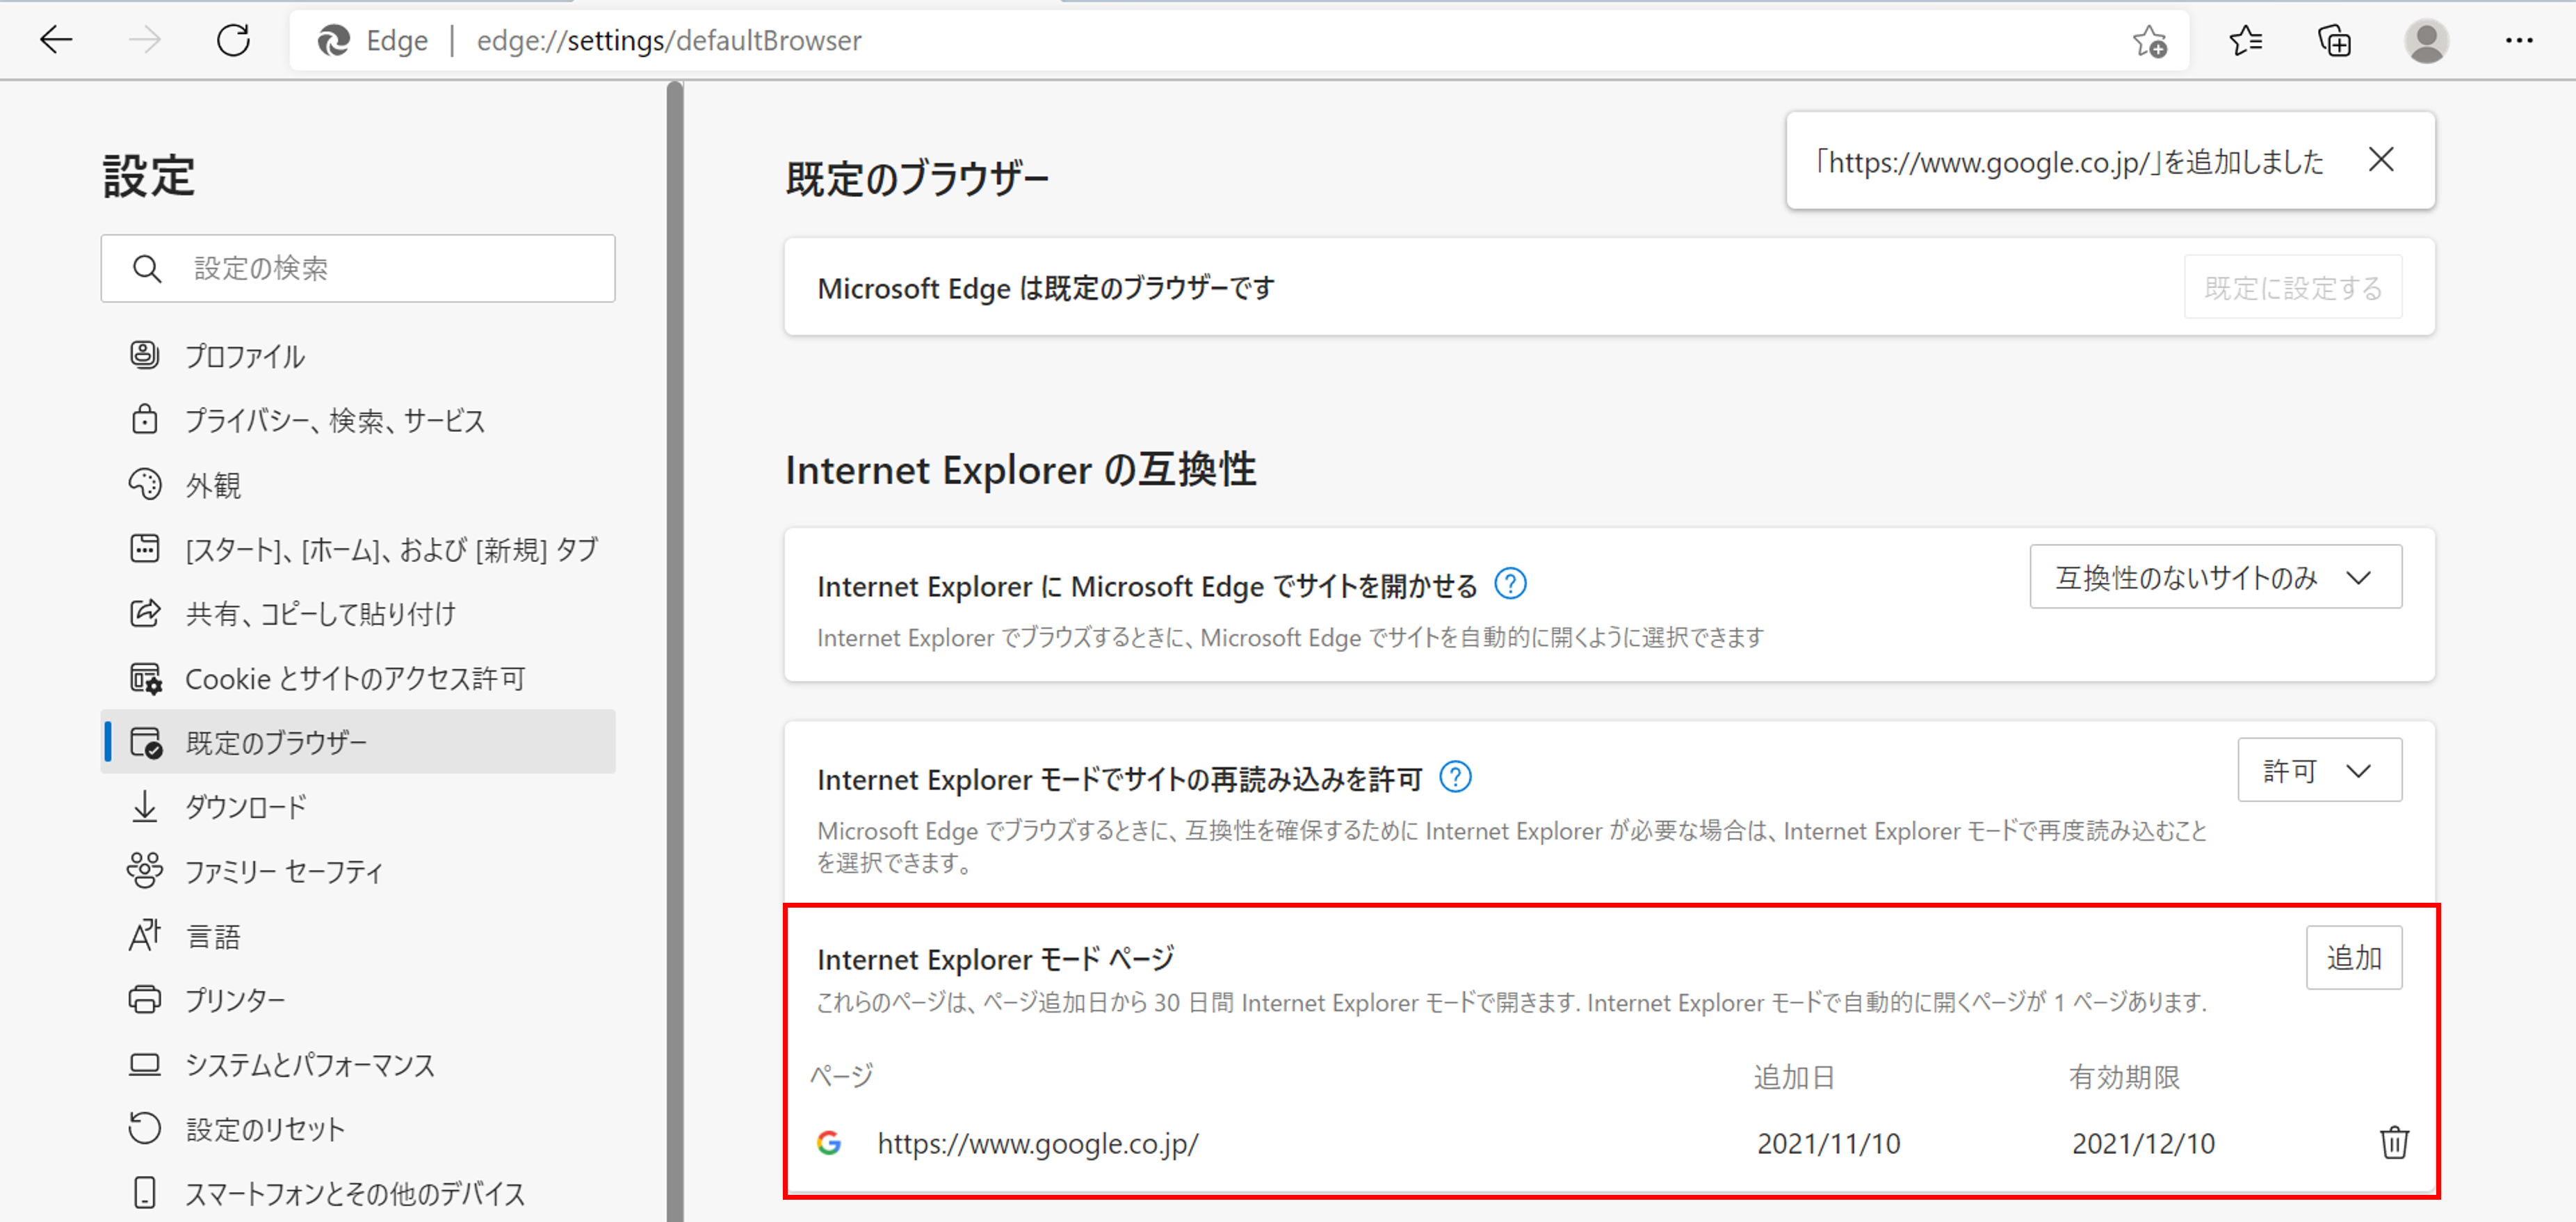 Internet Explorer モード ページ 設定完了画面ショット